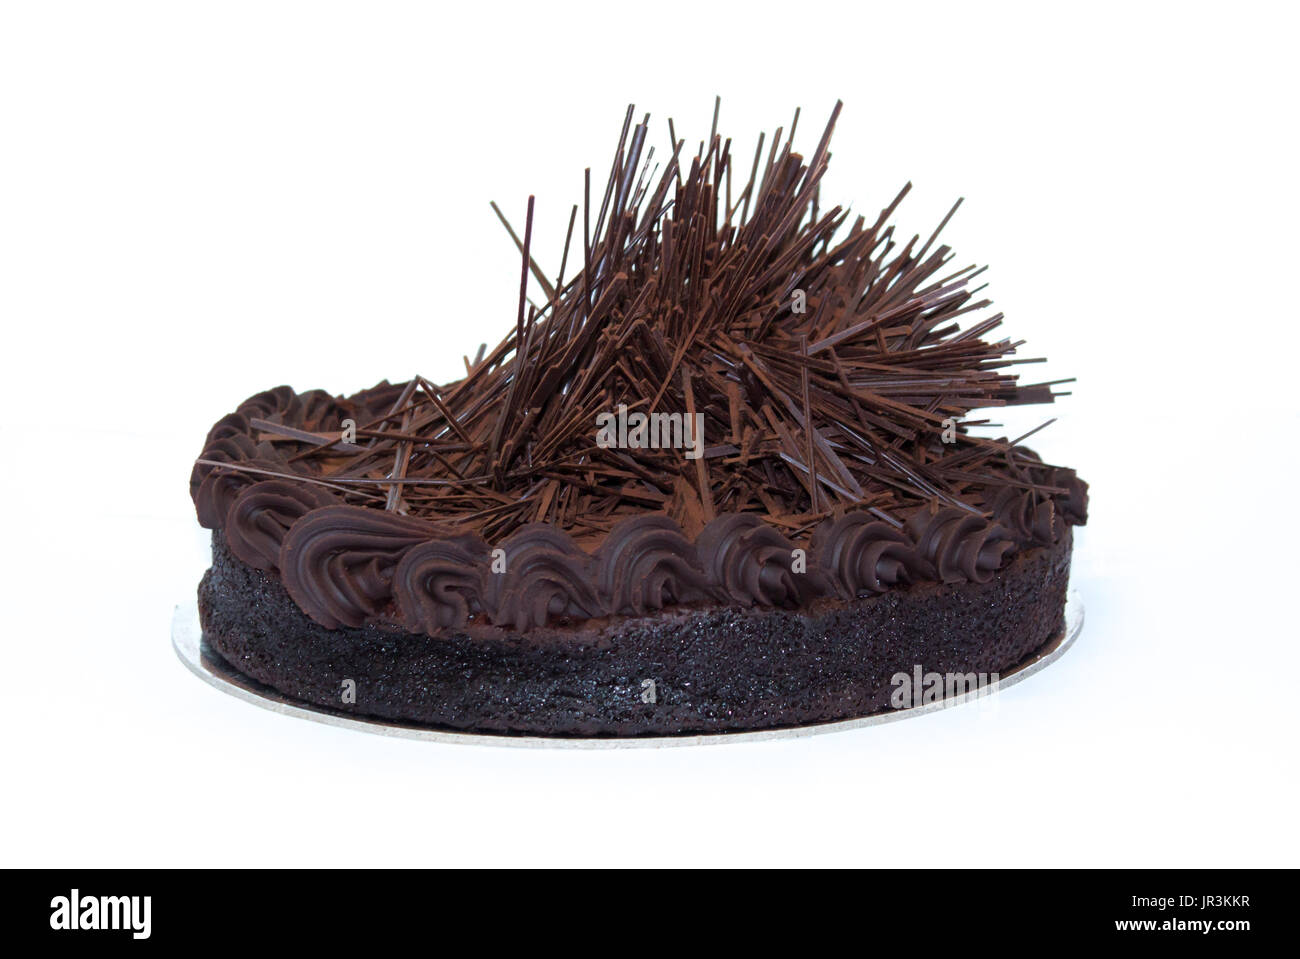 Gluten free celebration chocolate cake isolated on white background Stock Photo